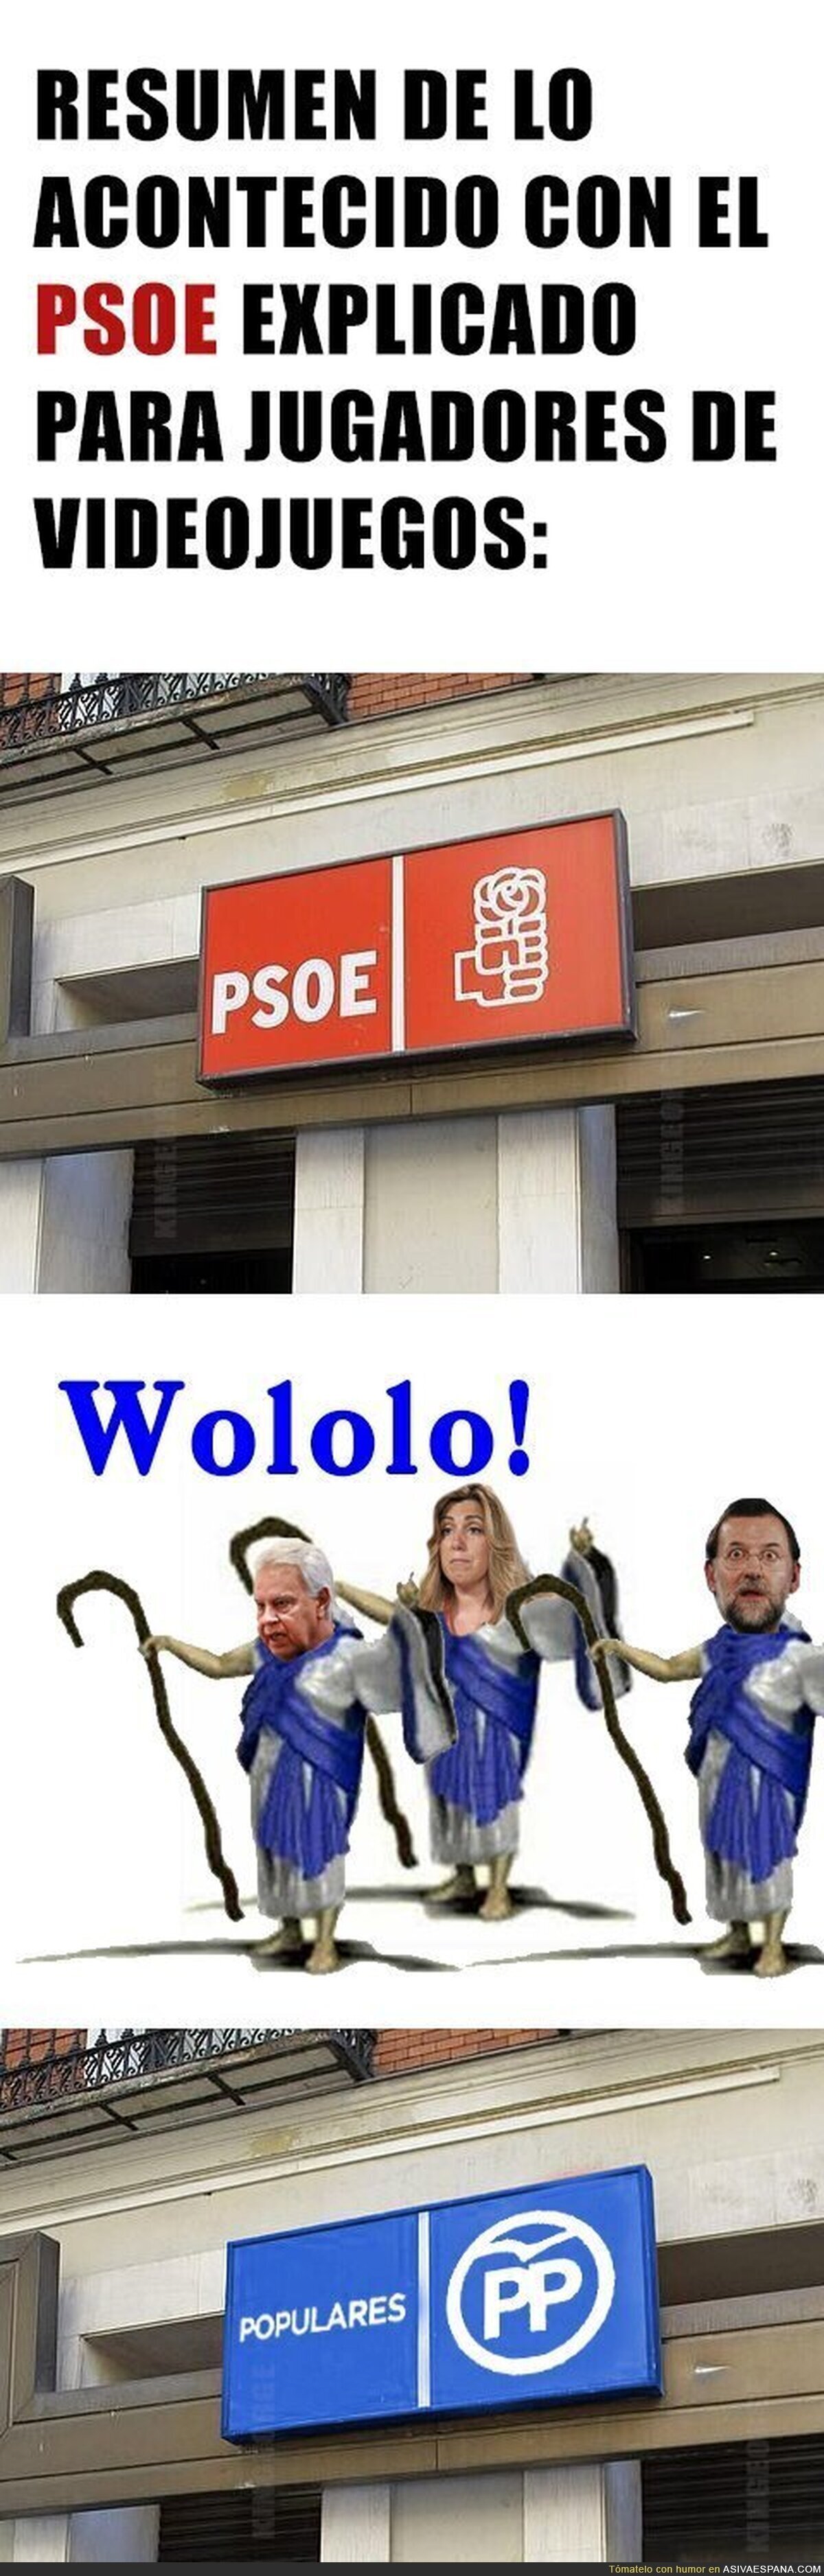 La versión explicada en videojuego de lo acontecido en el PSOE